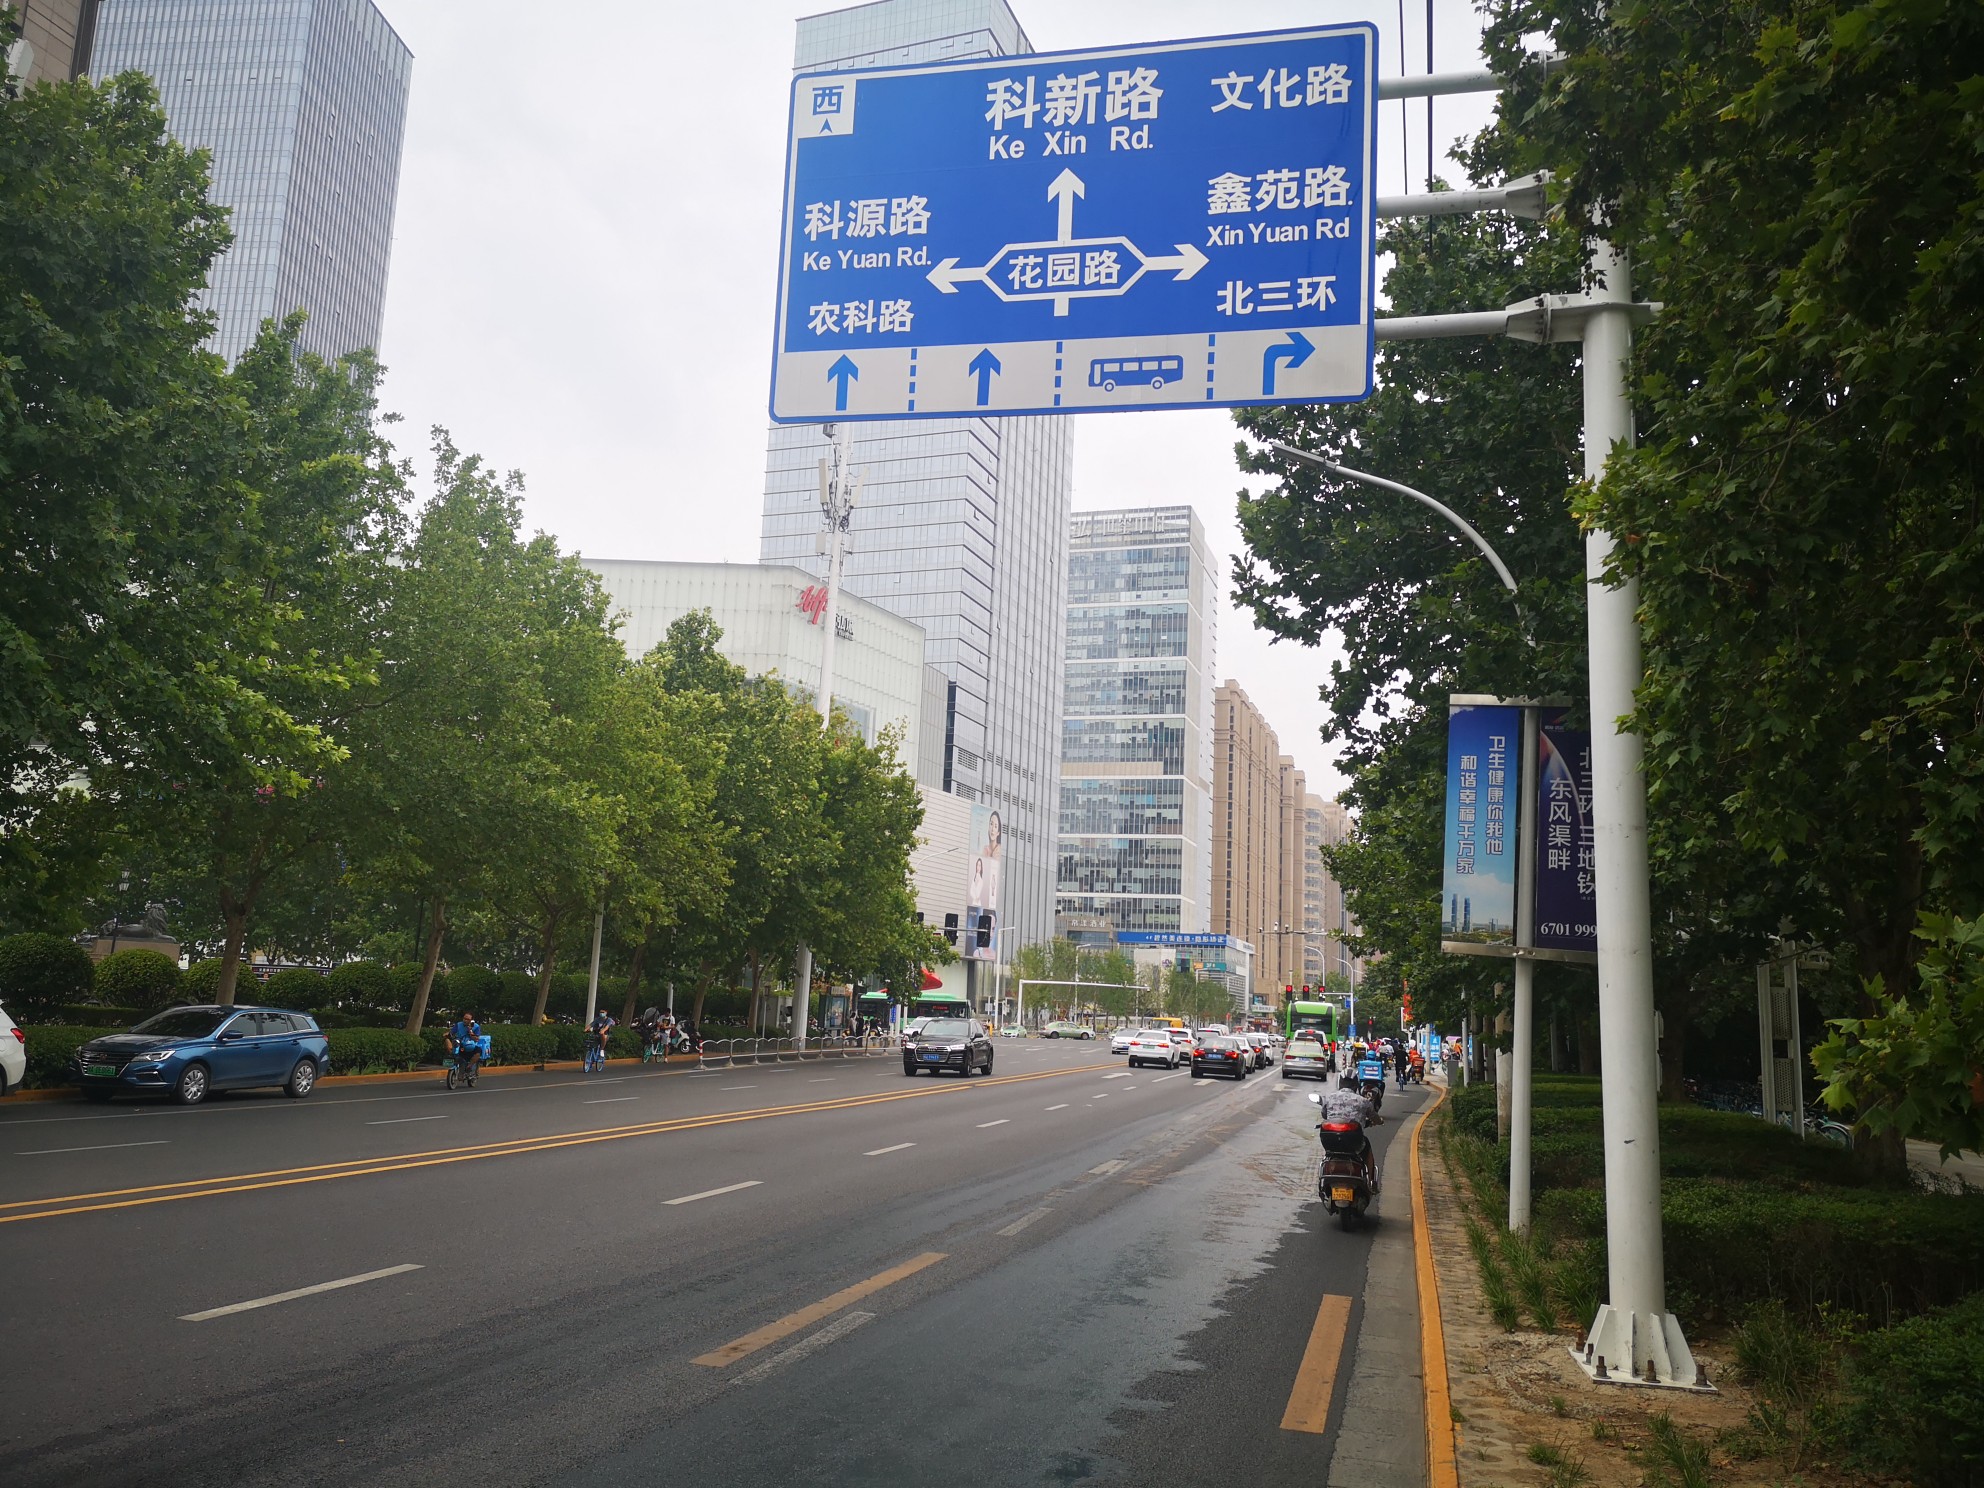 郑州一路口空中指示牌和地面标线不统一过往司机有点蒙